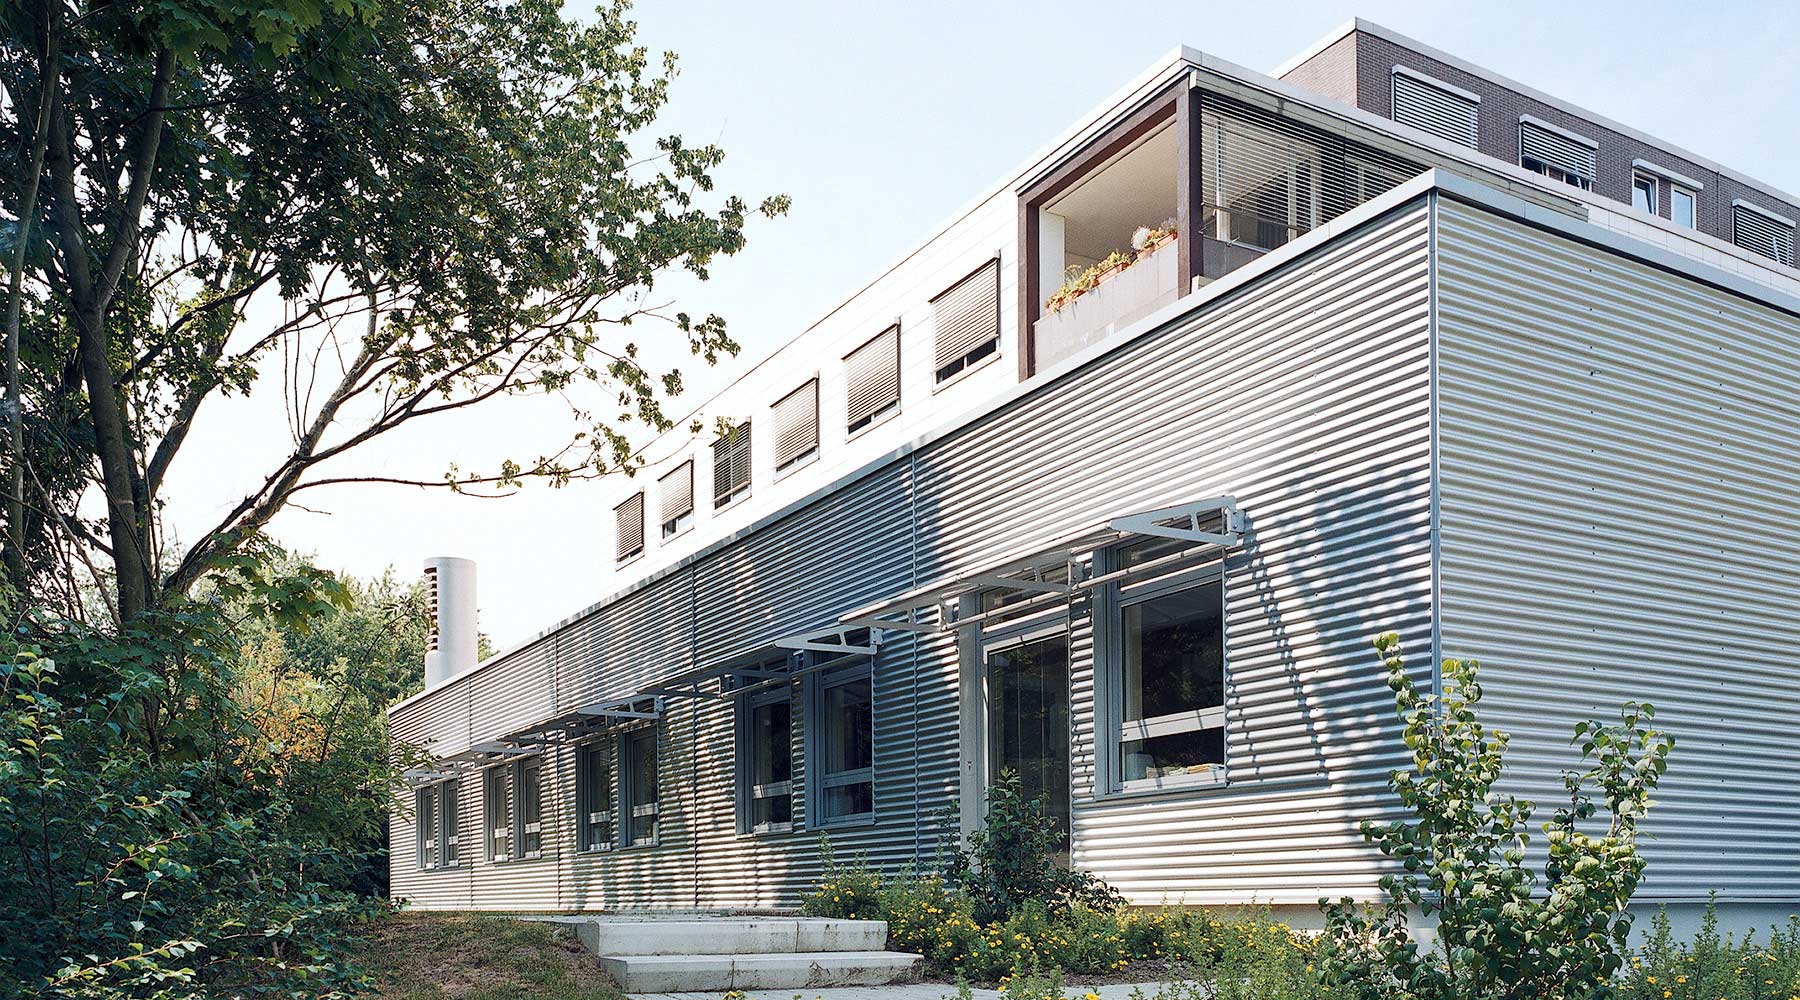 Moderne Architektur einer Intensivstation mit Aluminiumfassade angrenzend an Grünfläche.